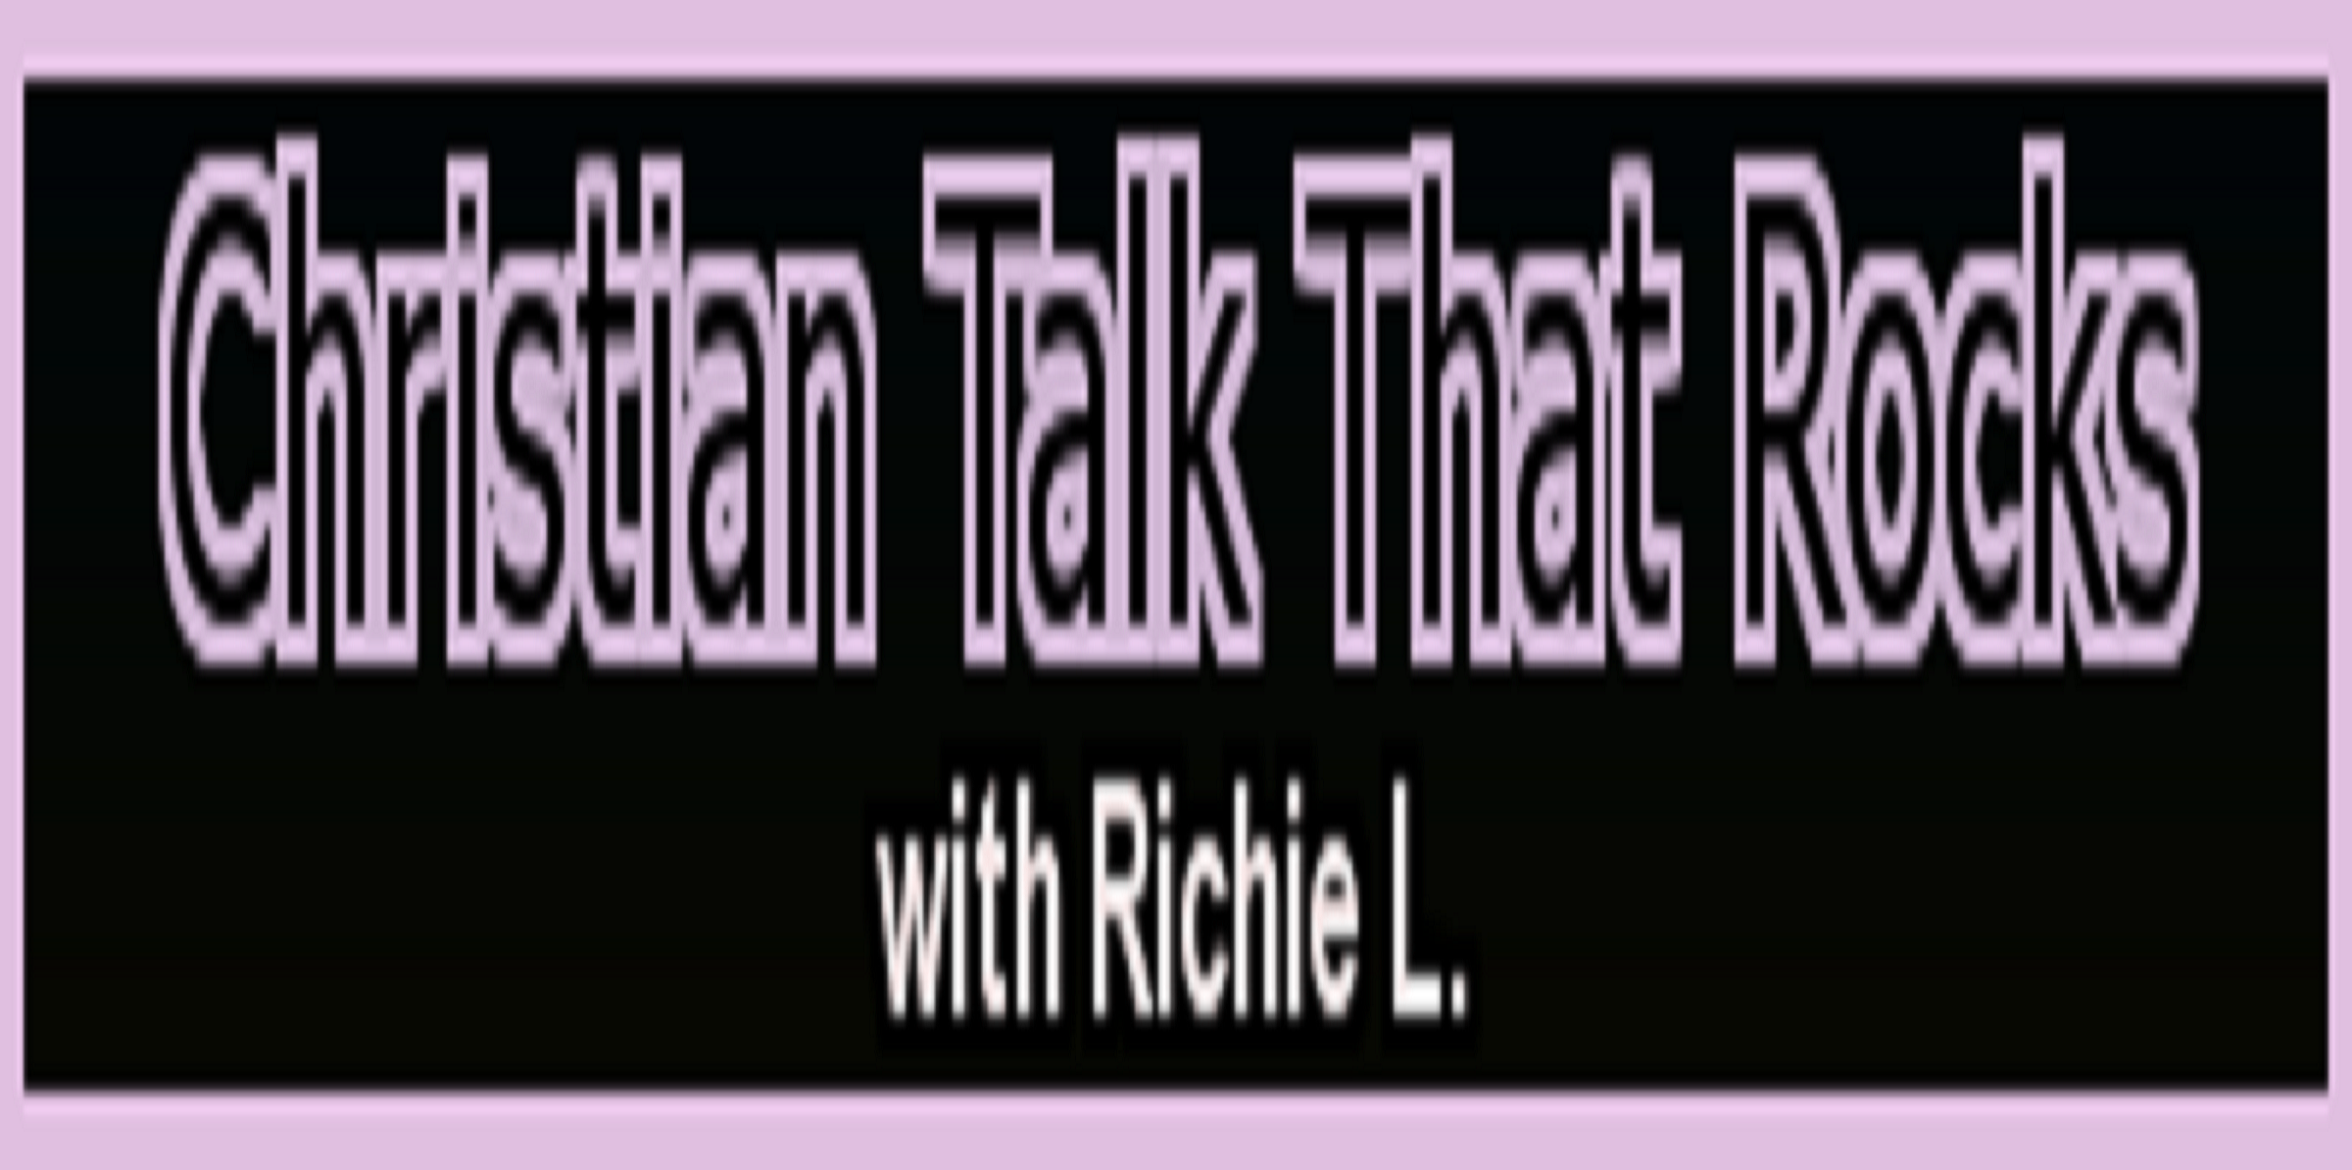 Christian-Talk-That-Rocks-Banner-Banner4